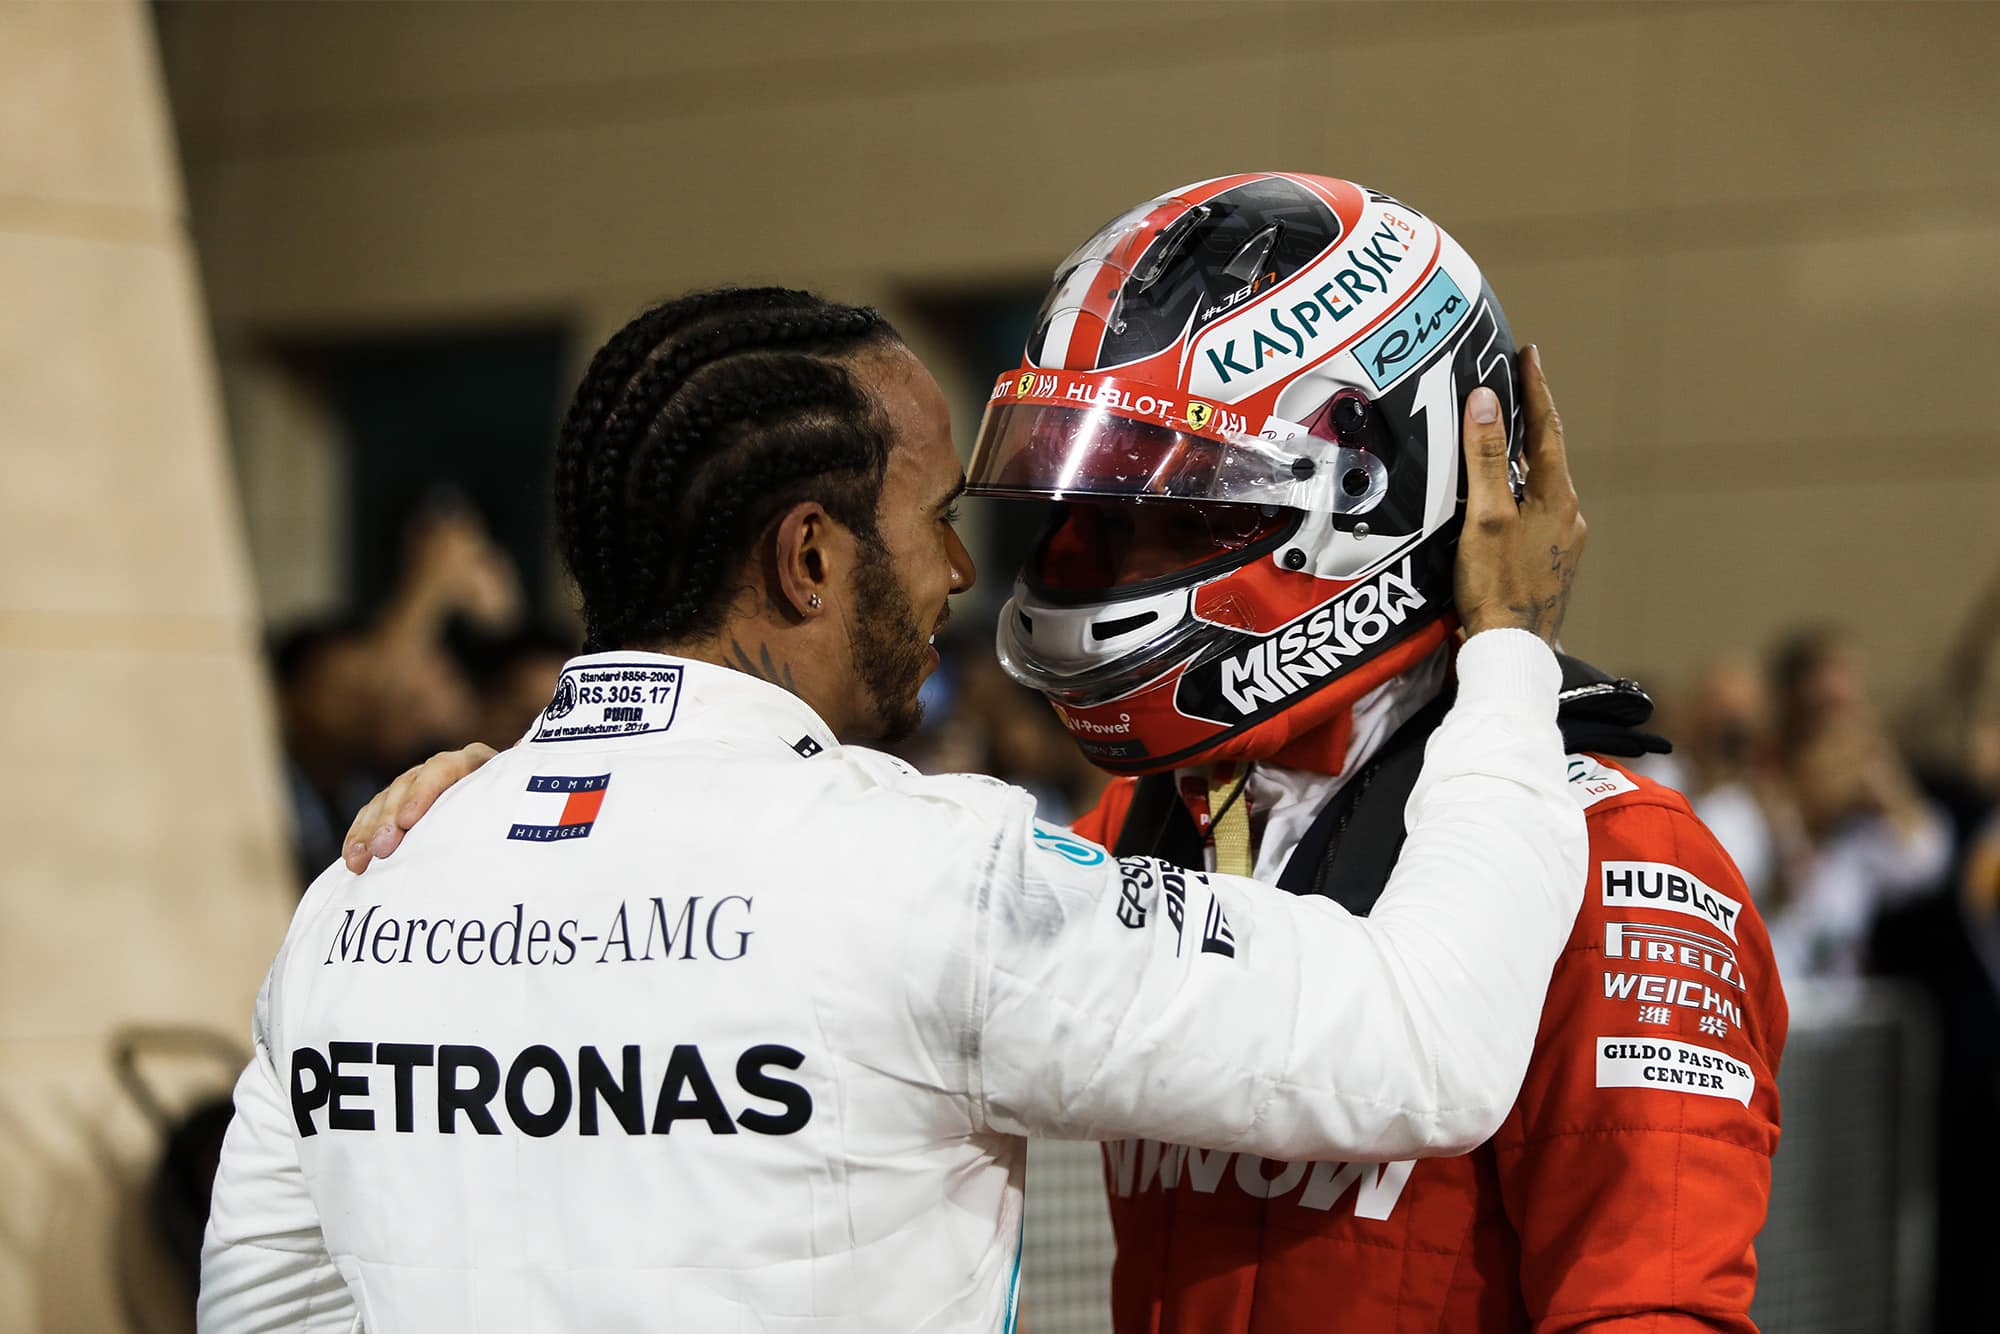 Lewis Hamilton embraces Charles Leclerc after the Bahrain Grand Prix